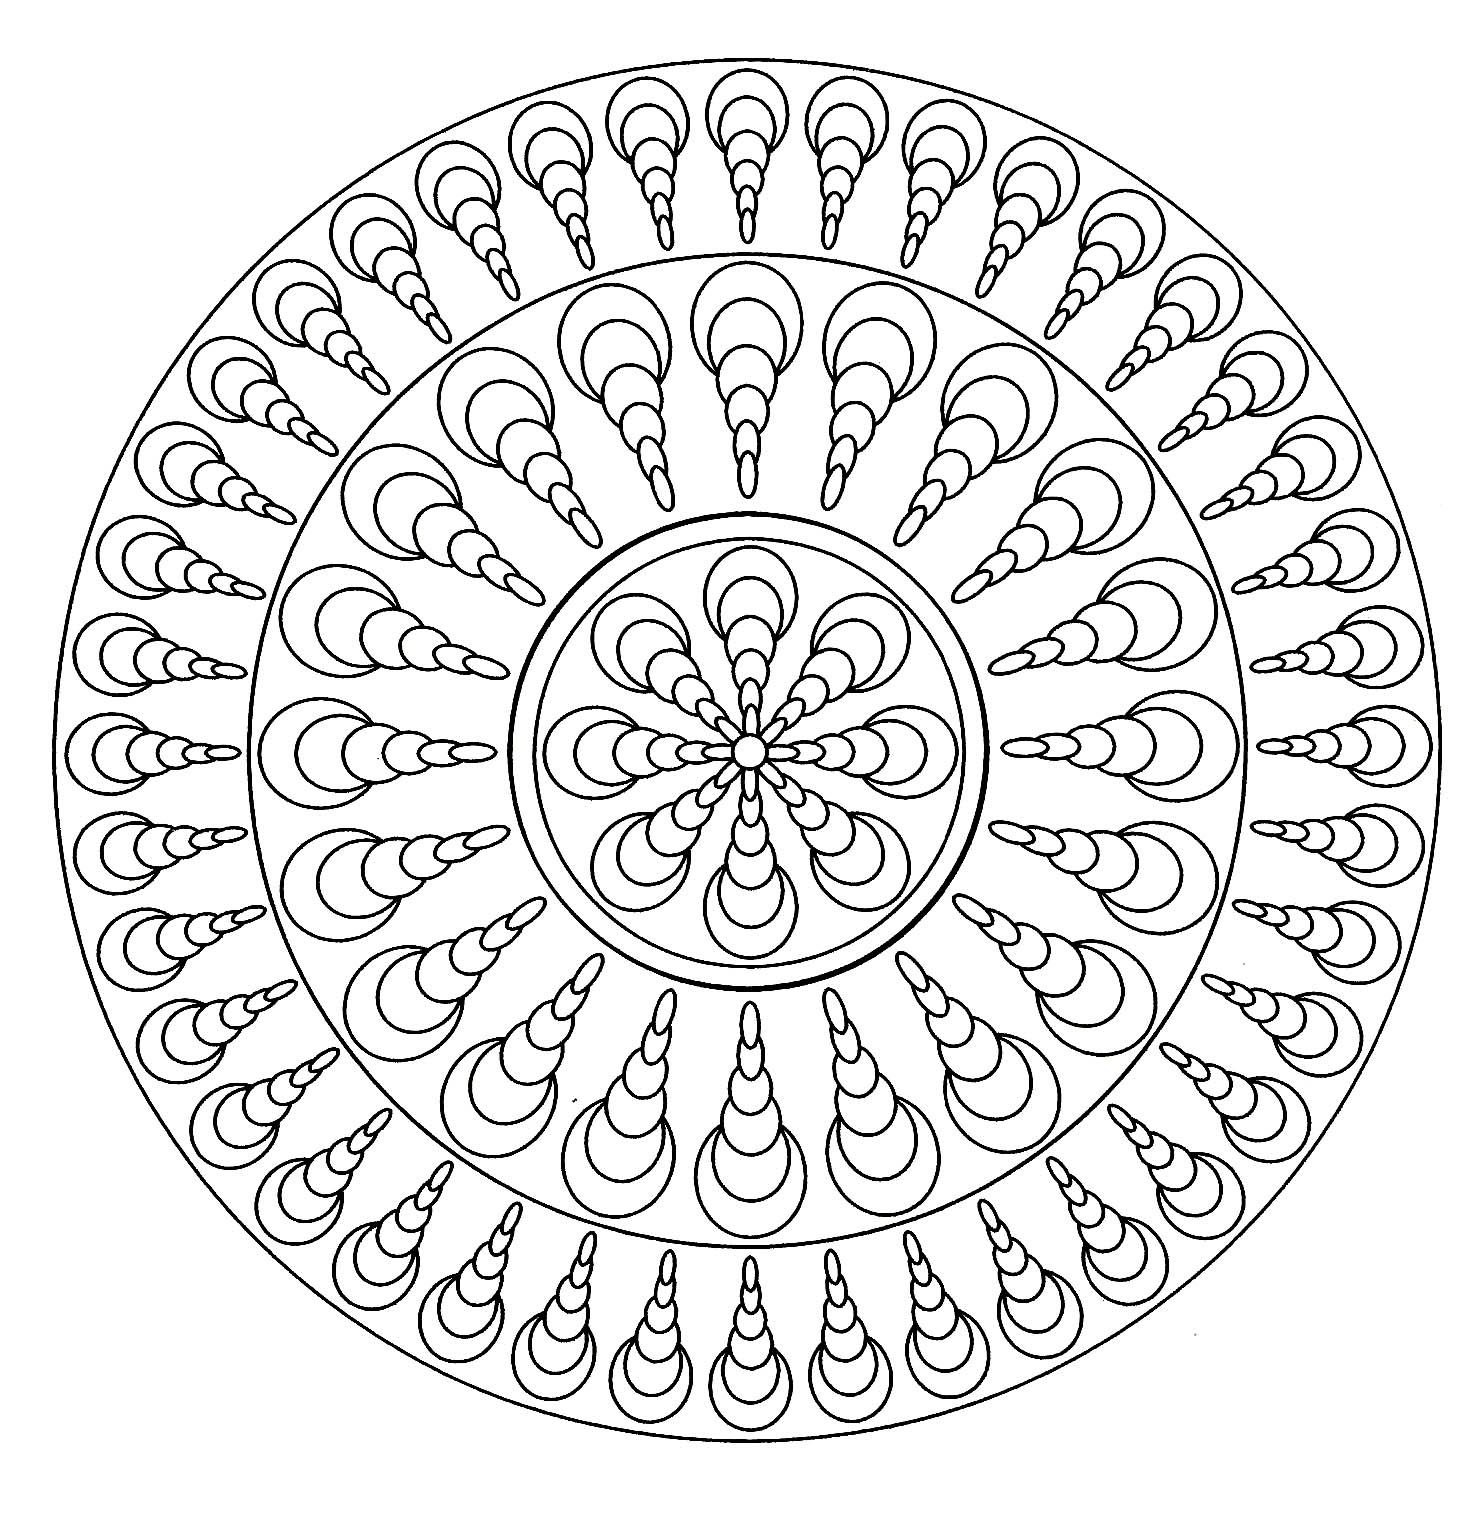 Mandala geometría fácil - 4